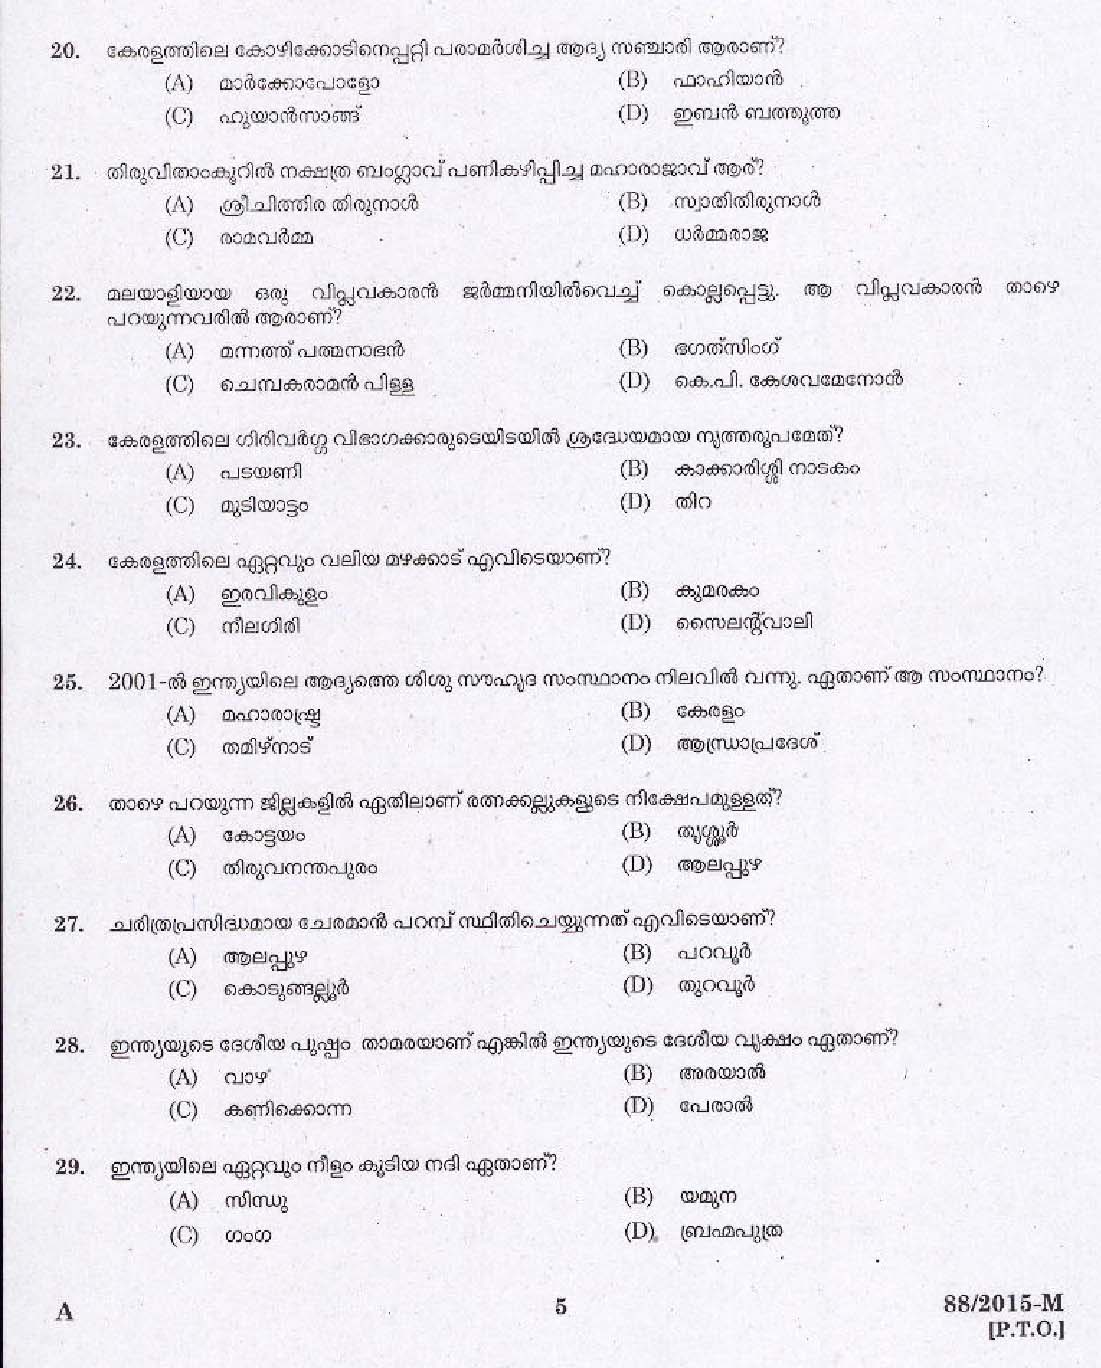 Kerala PSC Driver Grade II Exam 2015 Question Paper Code 882015 M 3